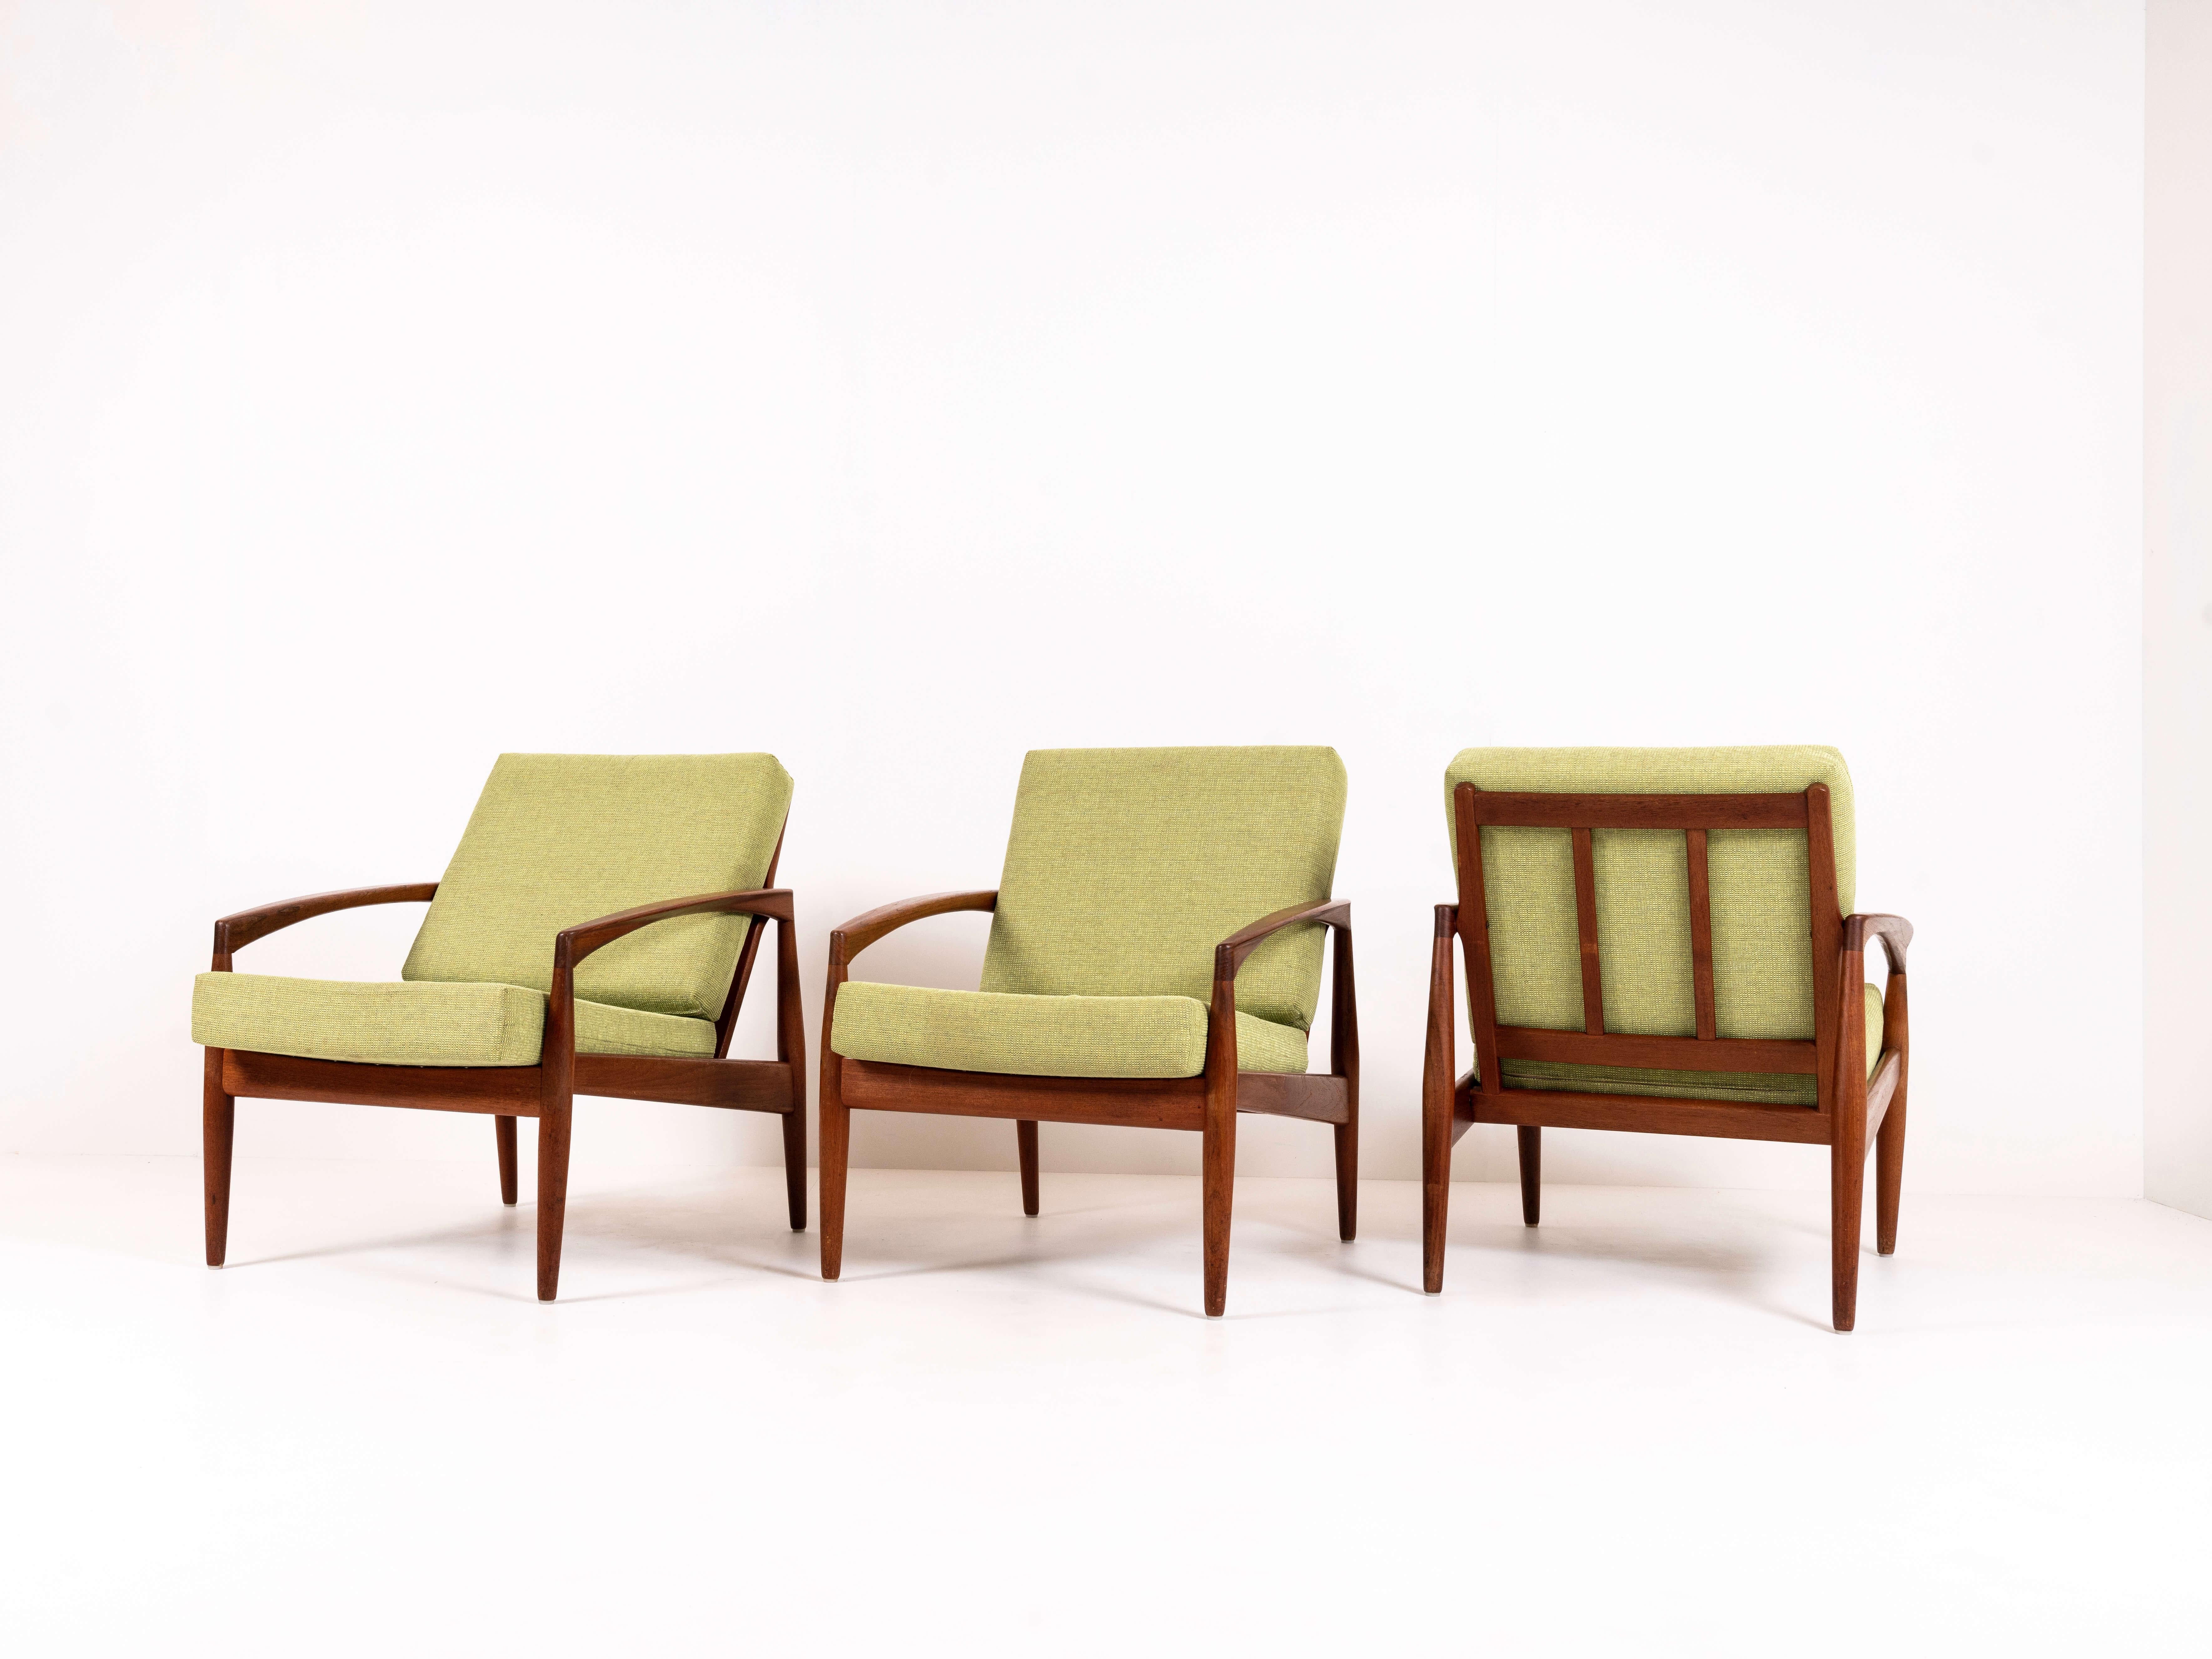 Ensemble de trois chaises à couteau en papier, modèle 121, par Kai Kristiansen pour Magnus Olesen, Danemark, années 1960. Ces chaises en teck ont un design véritablement iconique et organique ; des accoudoirs ronds et un dossier légèrement incliné